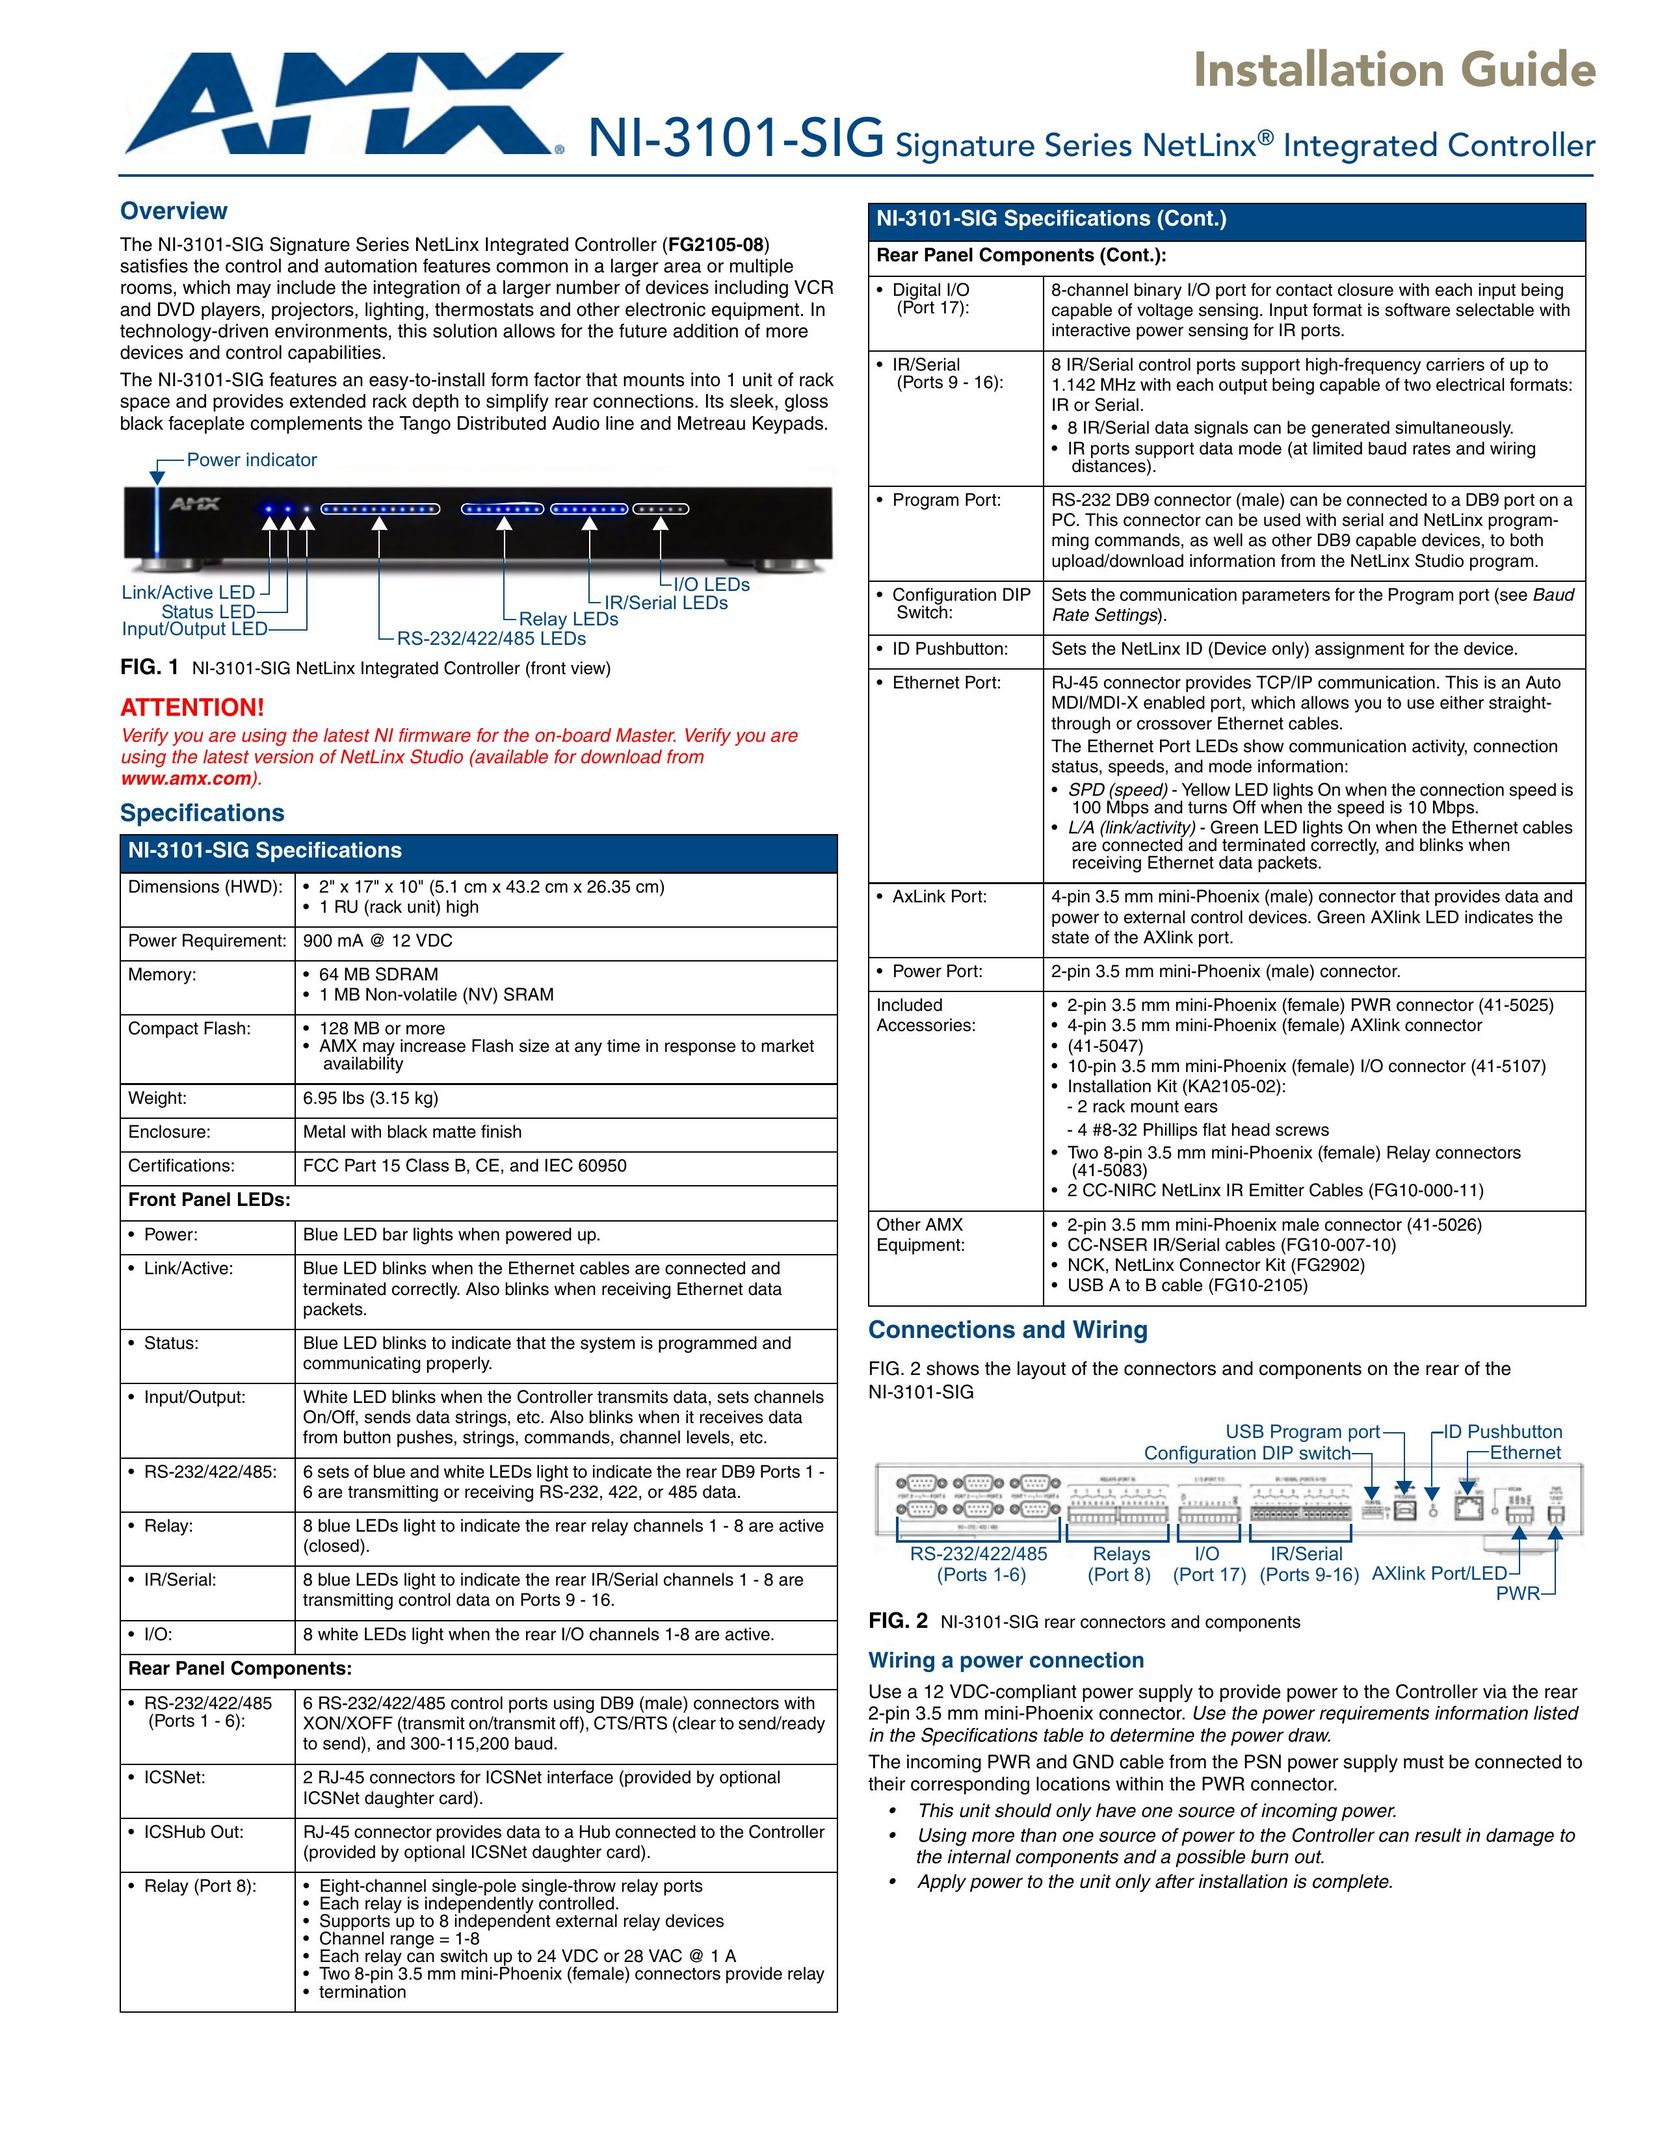 AMX NI-3101-SIG Network Card User Manual